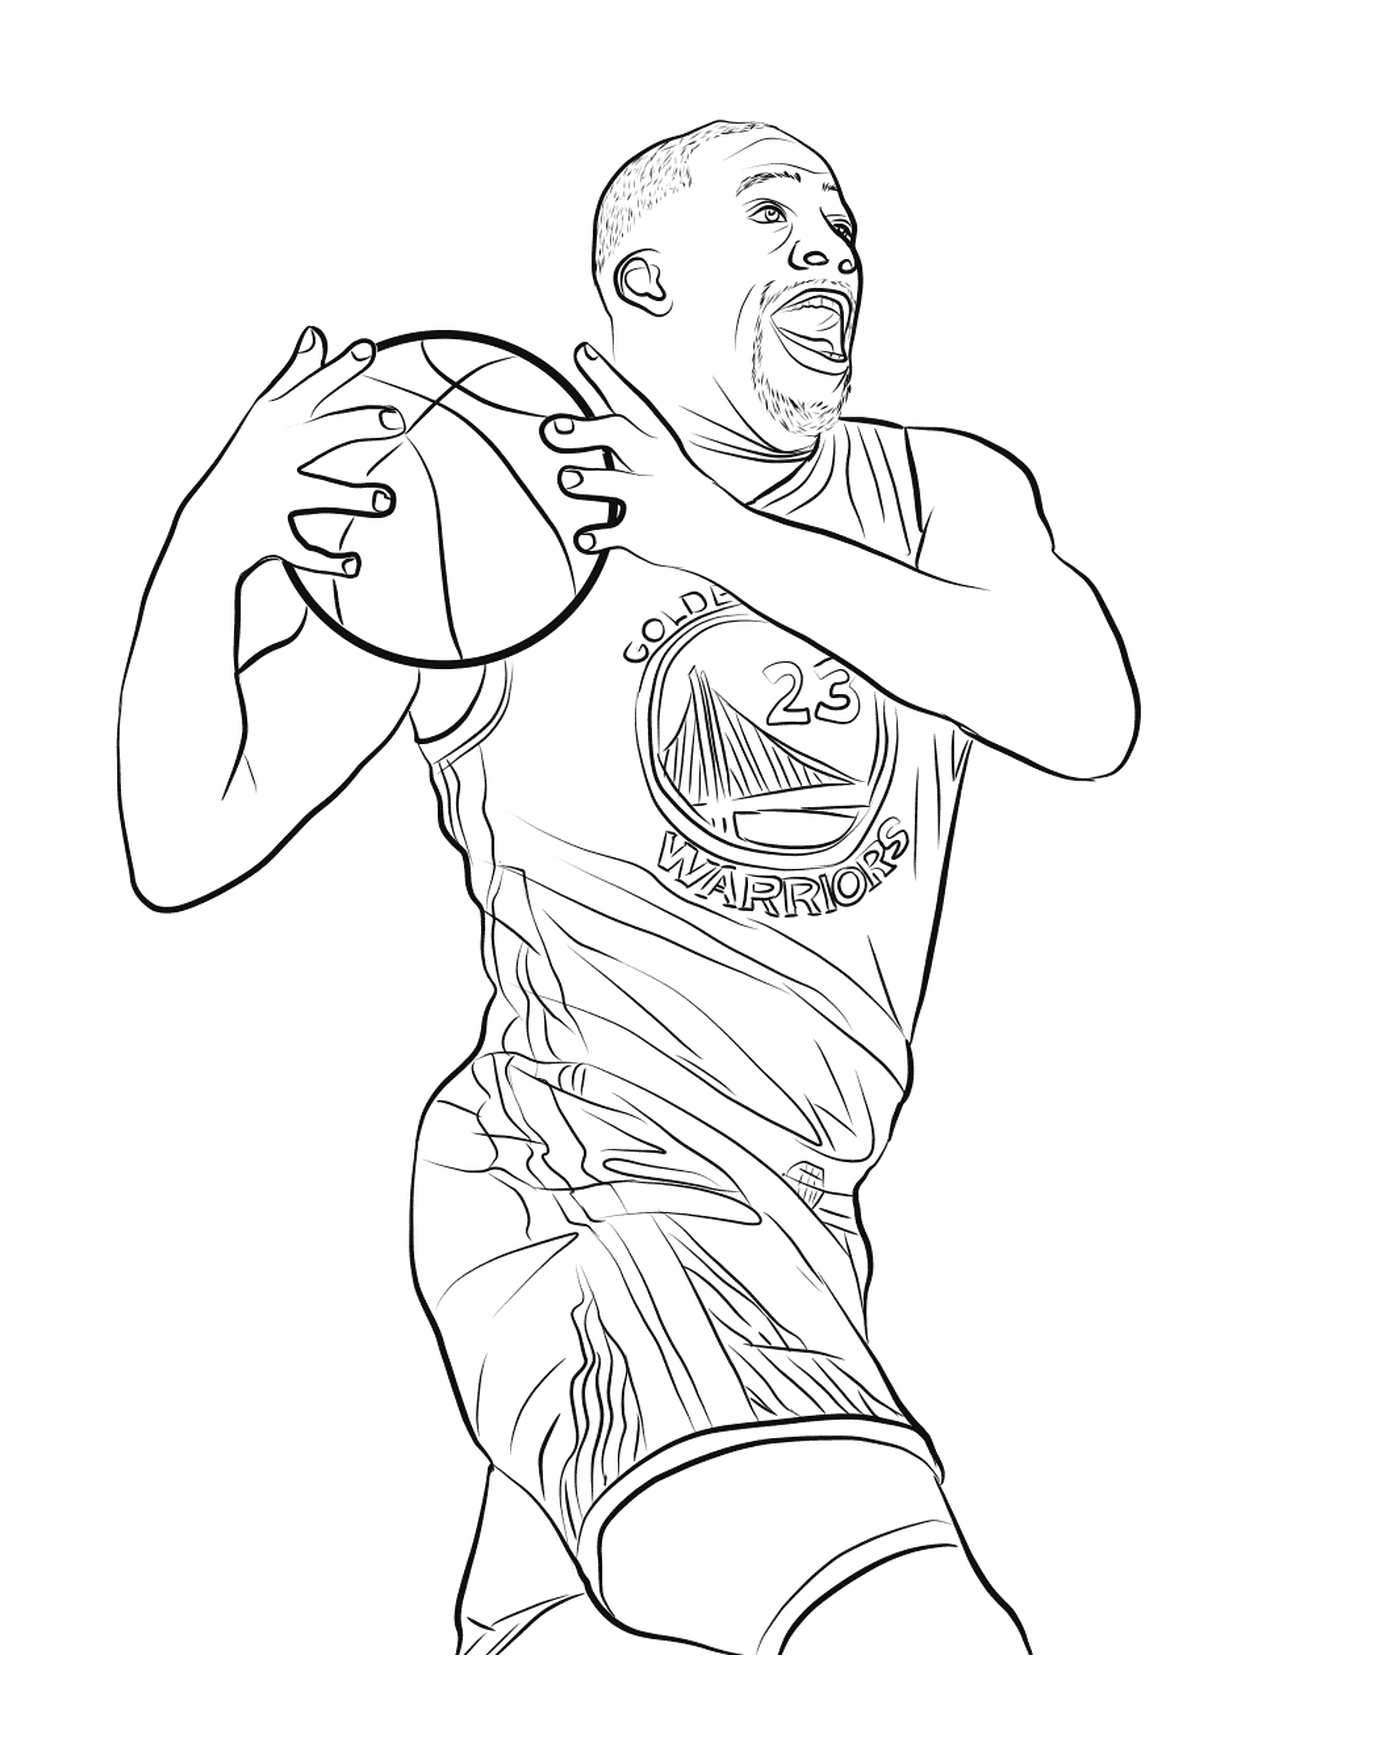   Draymond Green tient un ballon de basketball 